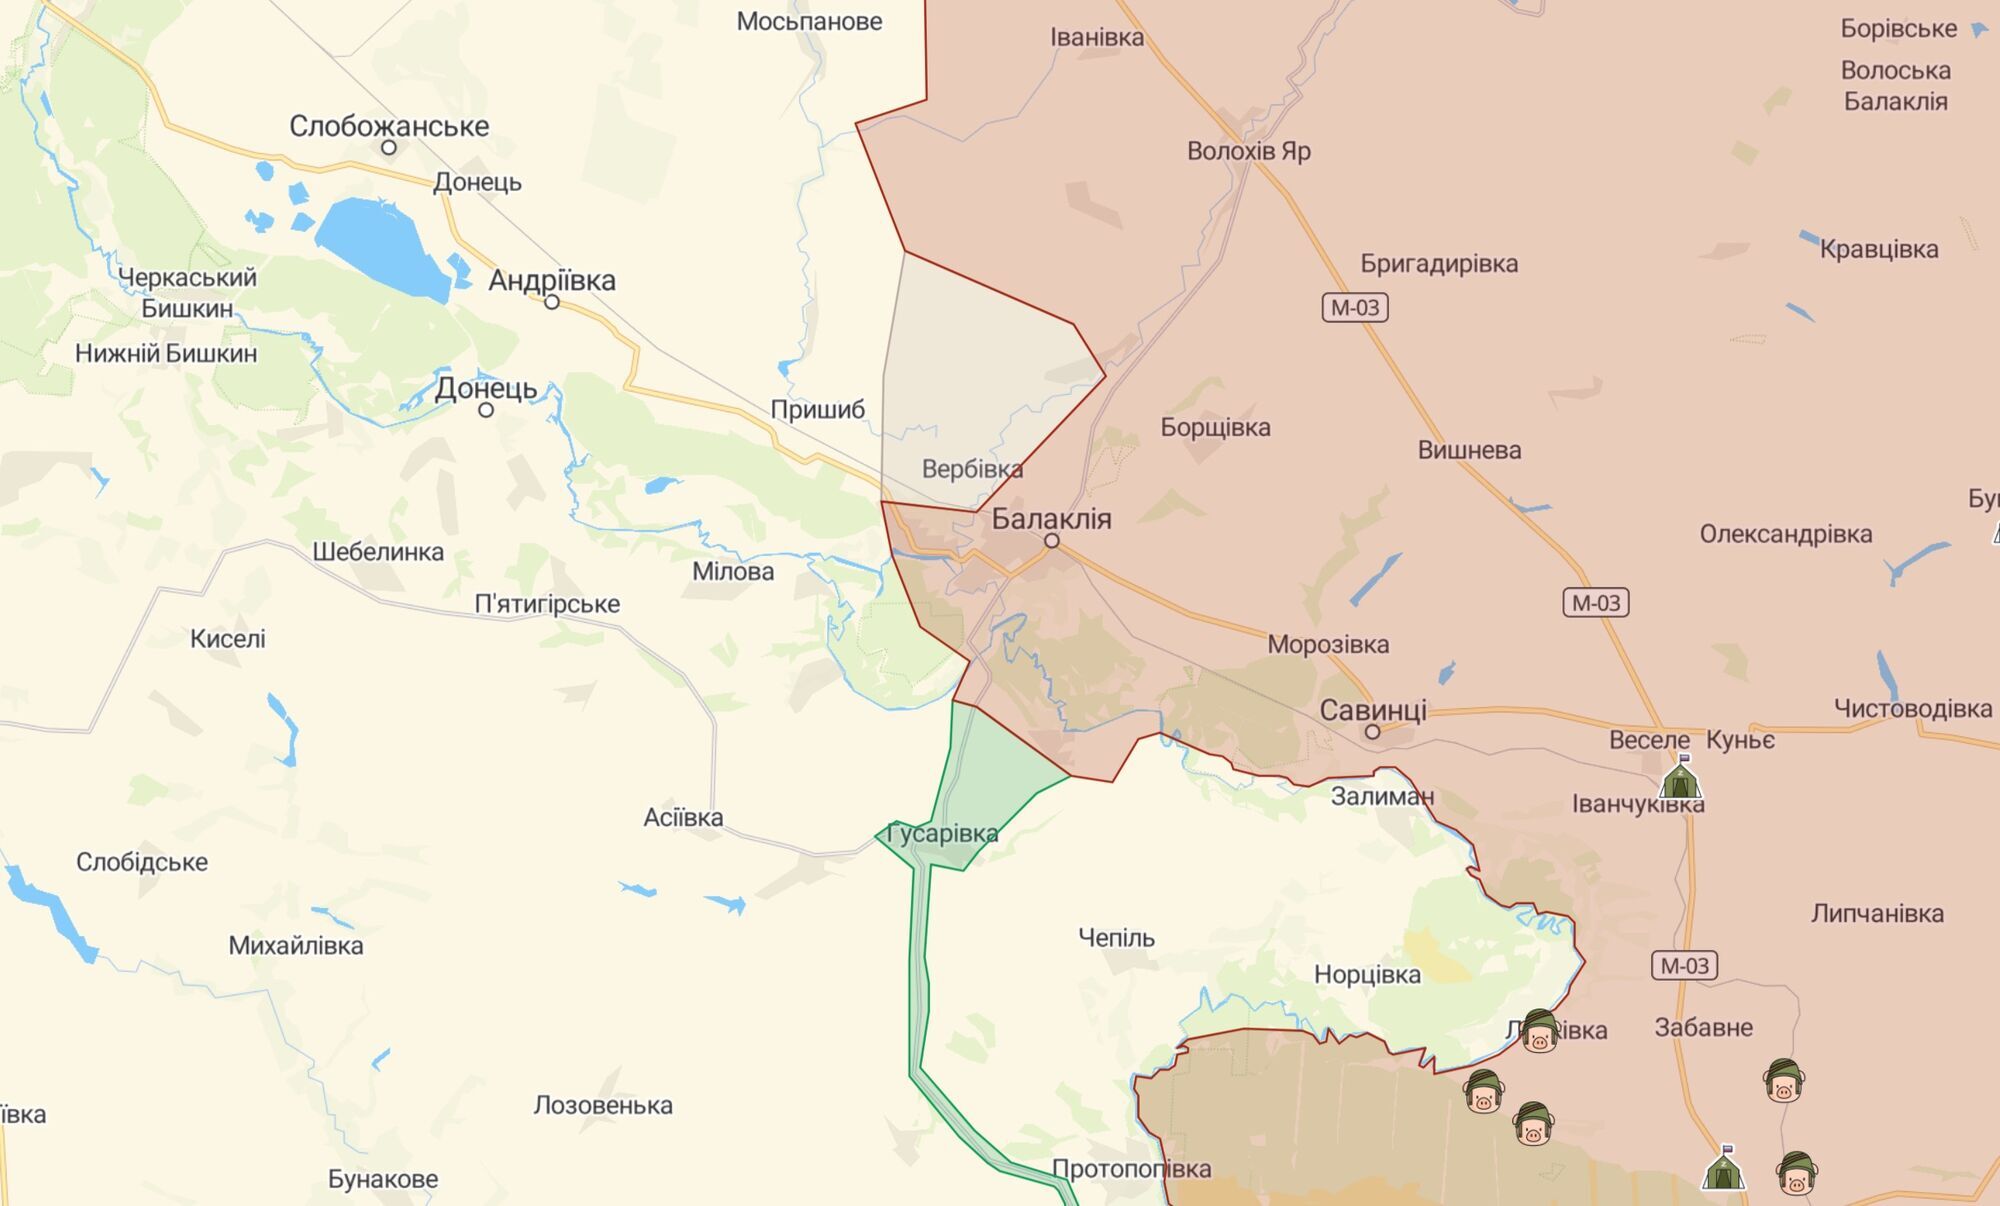 Згідно з оперативною мапою, в районі Вербівки та Яковенкова зафіксовано бої